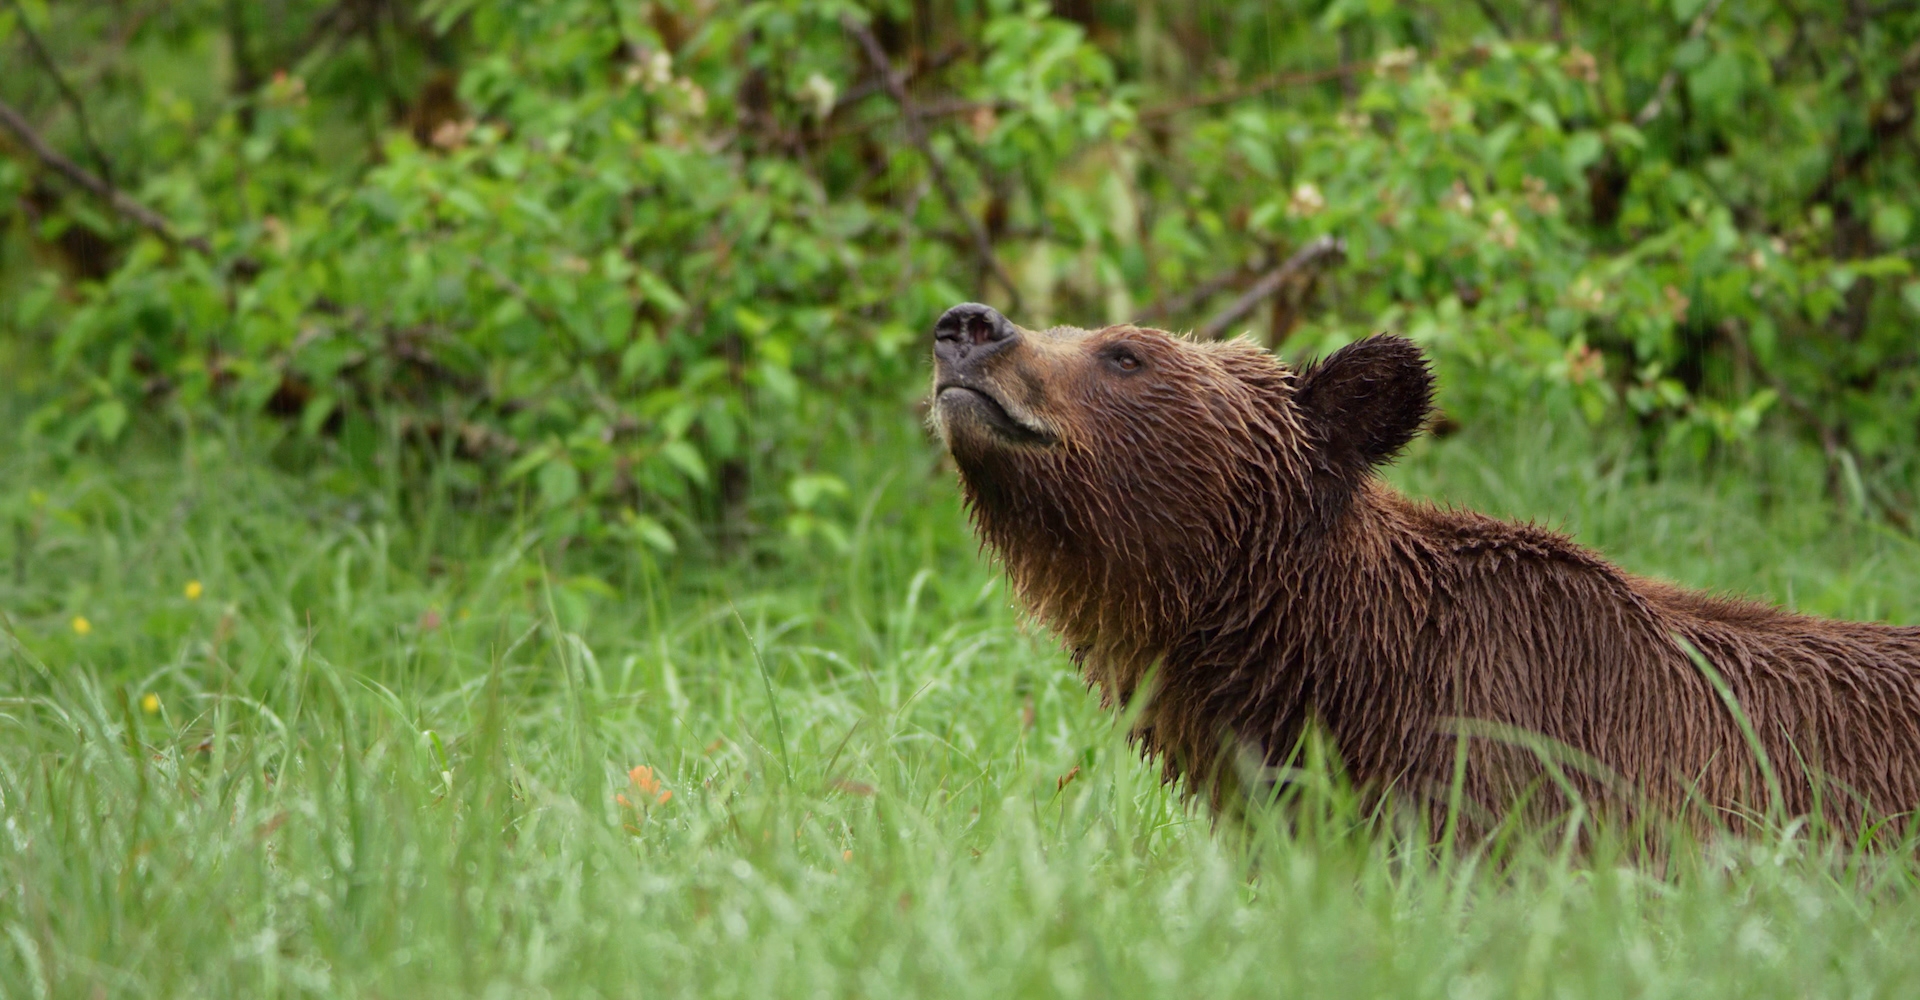 Great Bear Rainforest | Spirit Bear Entertainment